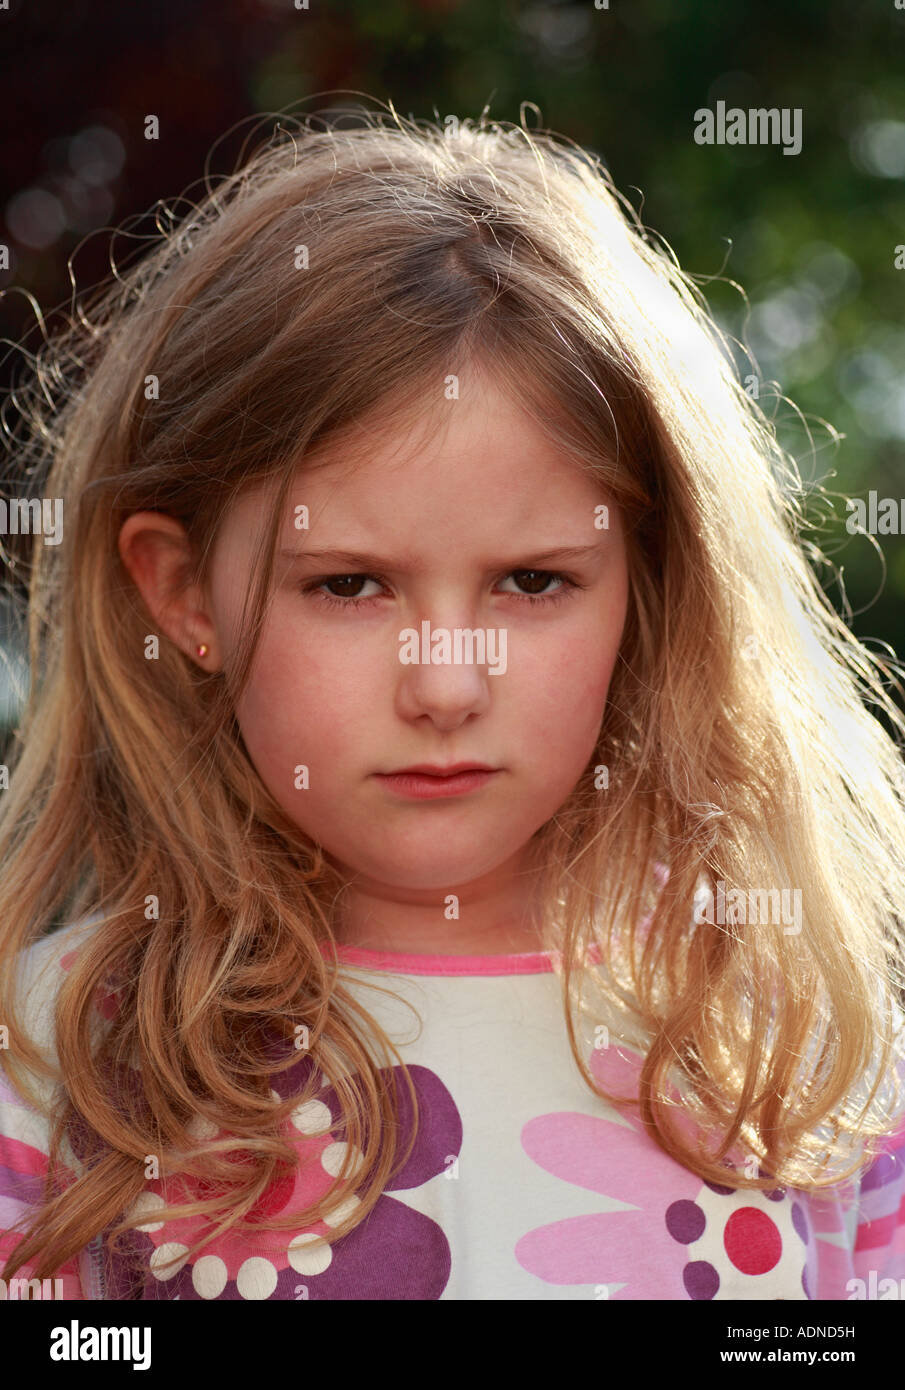 Testa e spalle shot di un 7 anno vecchia ragazza accigliata, in un cattivo umore o il broncio. Foto Stock